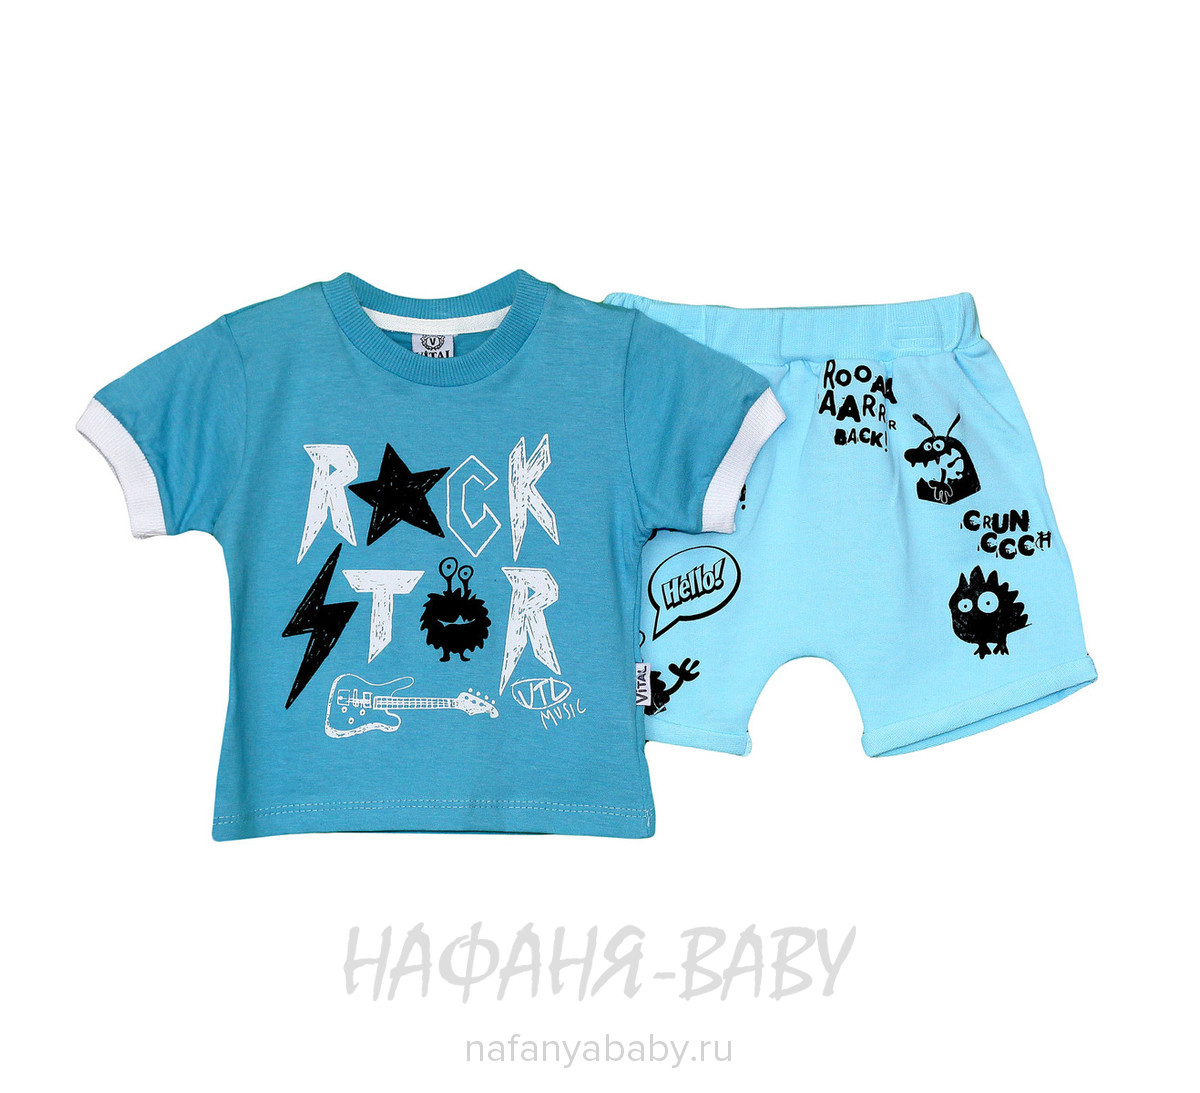 Детский костюм (футболка+шорты) VITAL, купить в интернет магазине Нафаня. арт: 842.